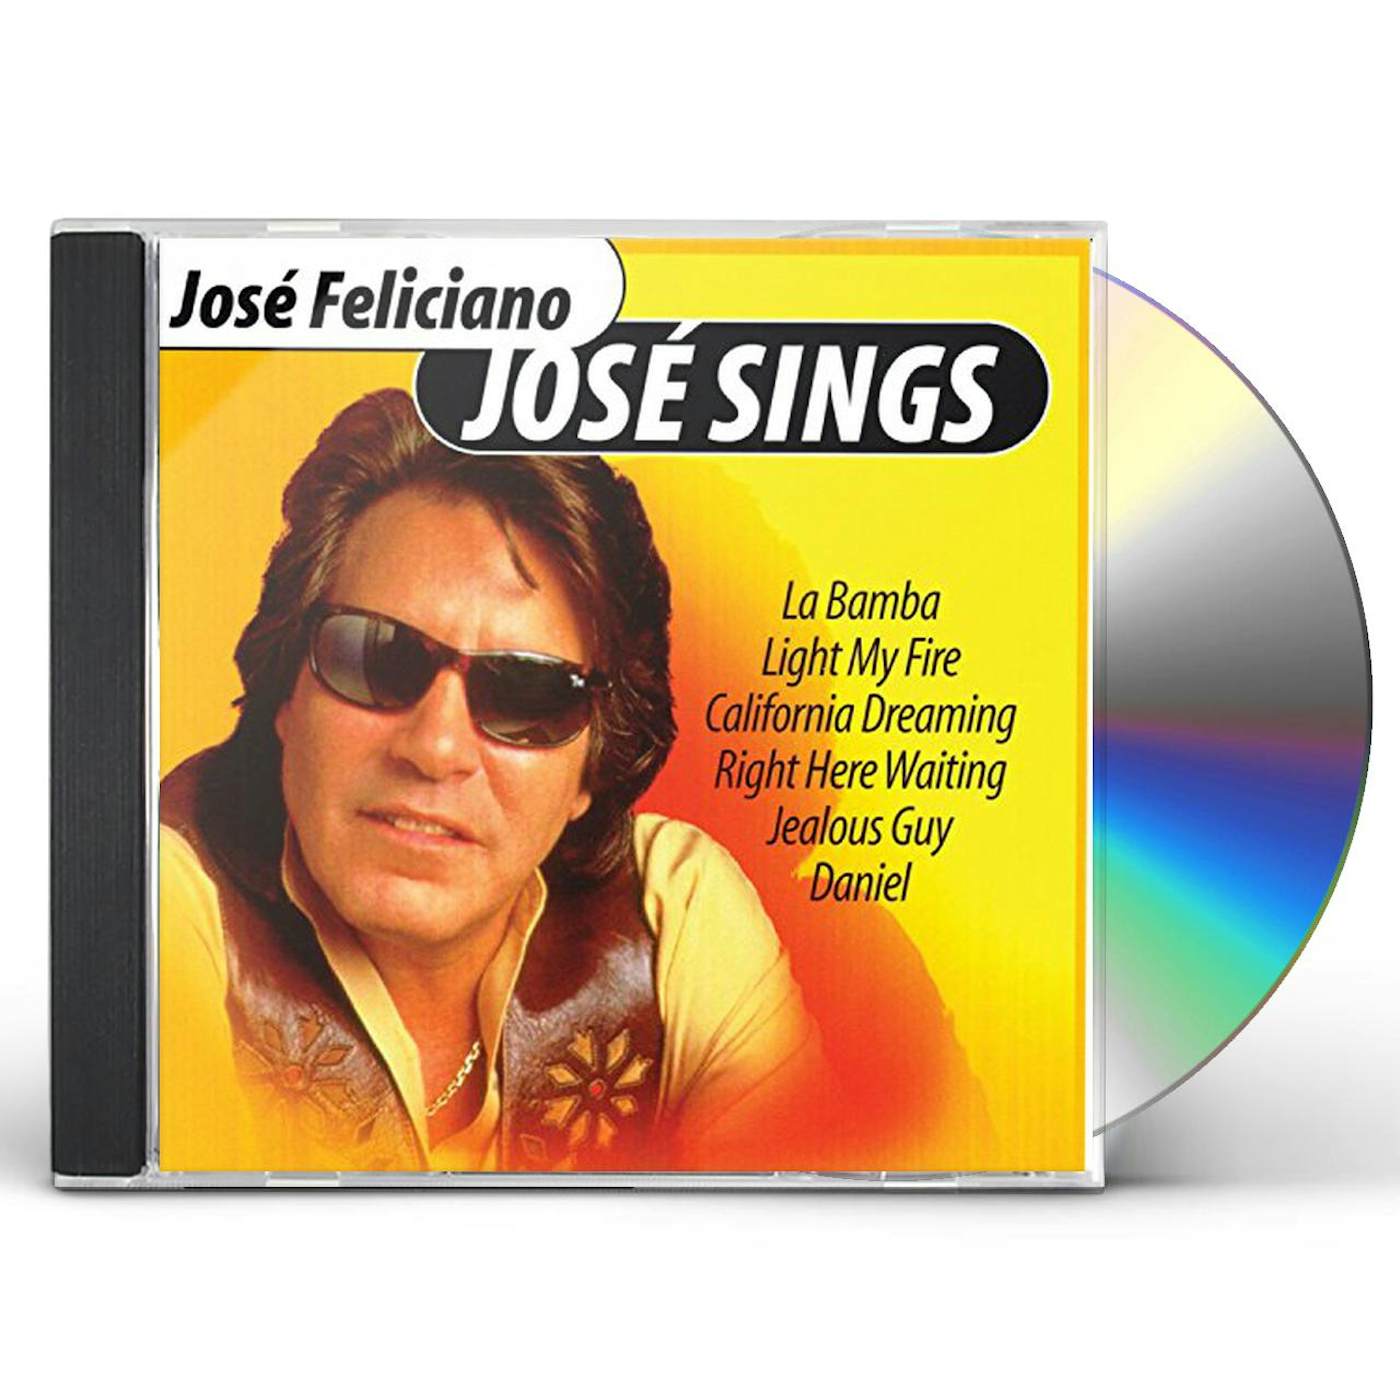 José Feliciano JOSE SINGS CD